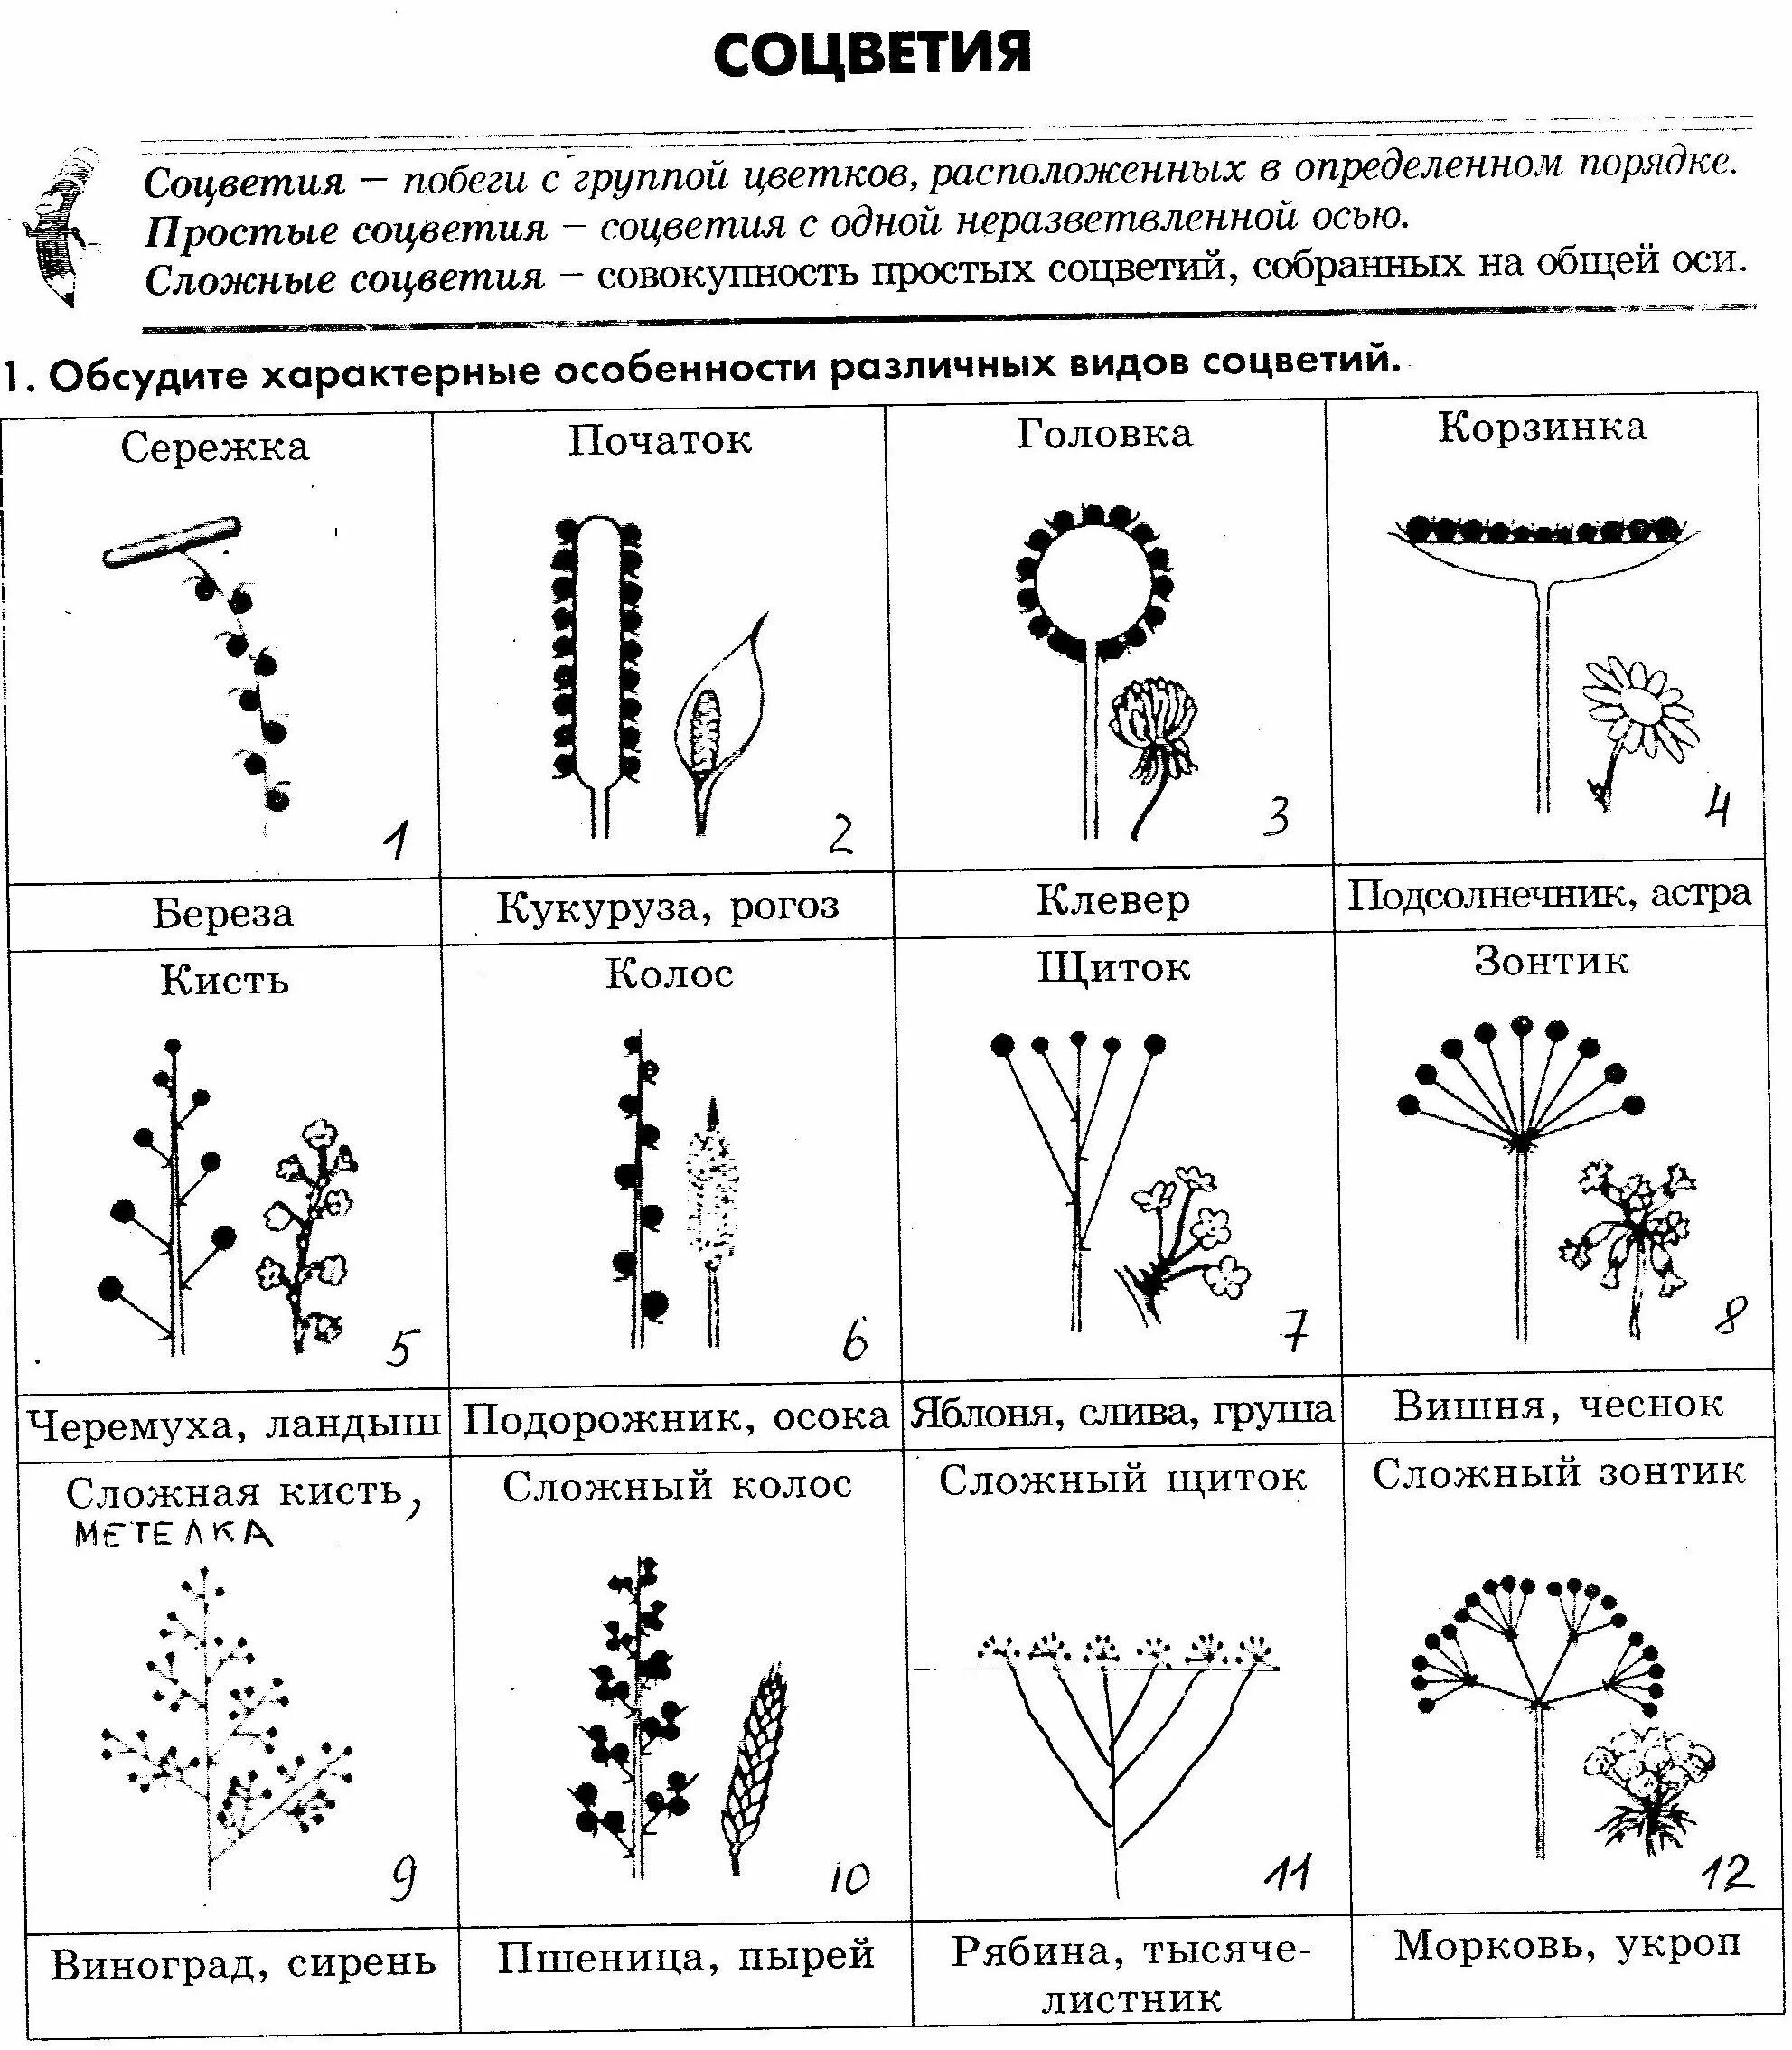 Какое из перечисленных соцветий относится к сложным. Таблица название соцветия схема. Схема 10 соцветий. Типы соцветий таблица соцветие схема растения. Схема классификации соцветий цветковых растений.